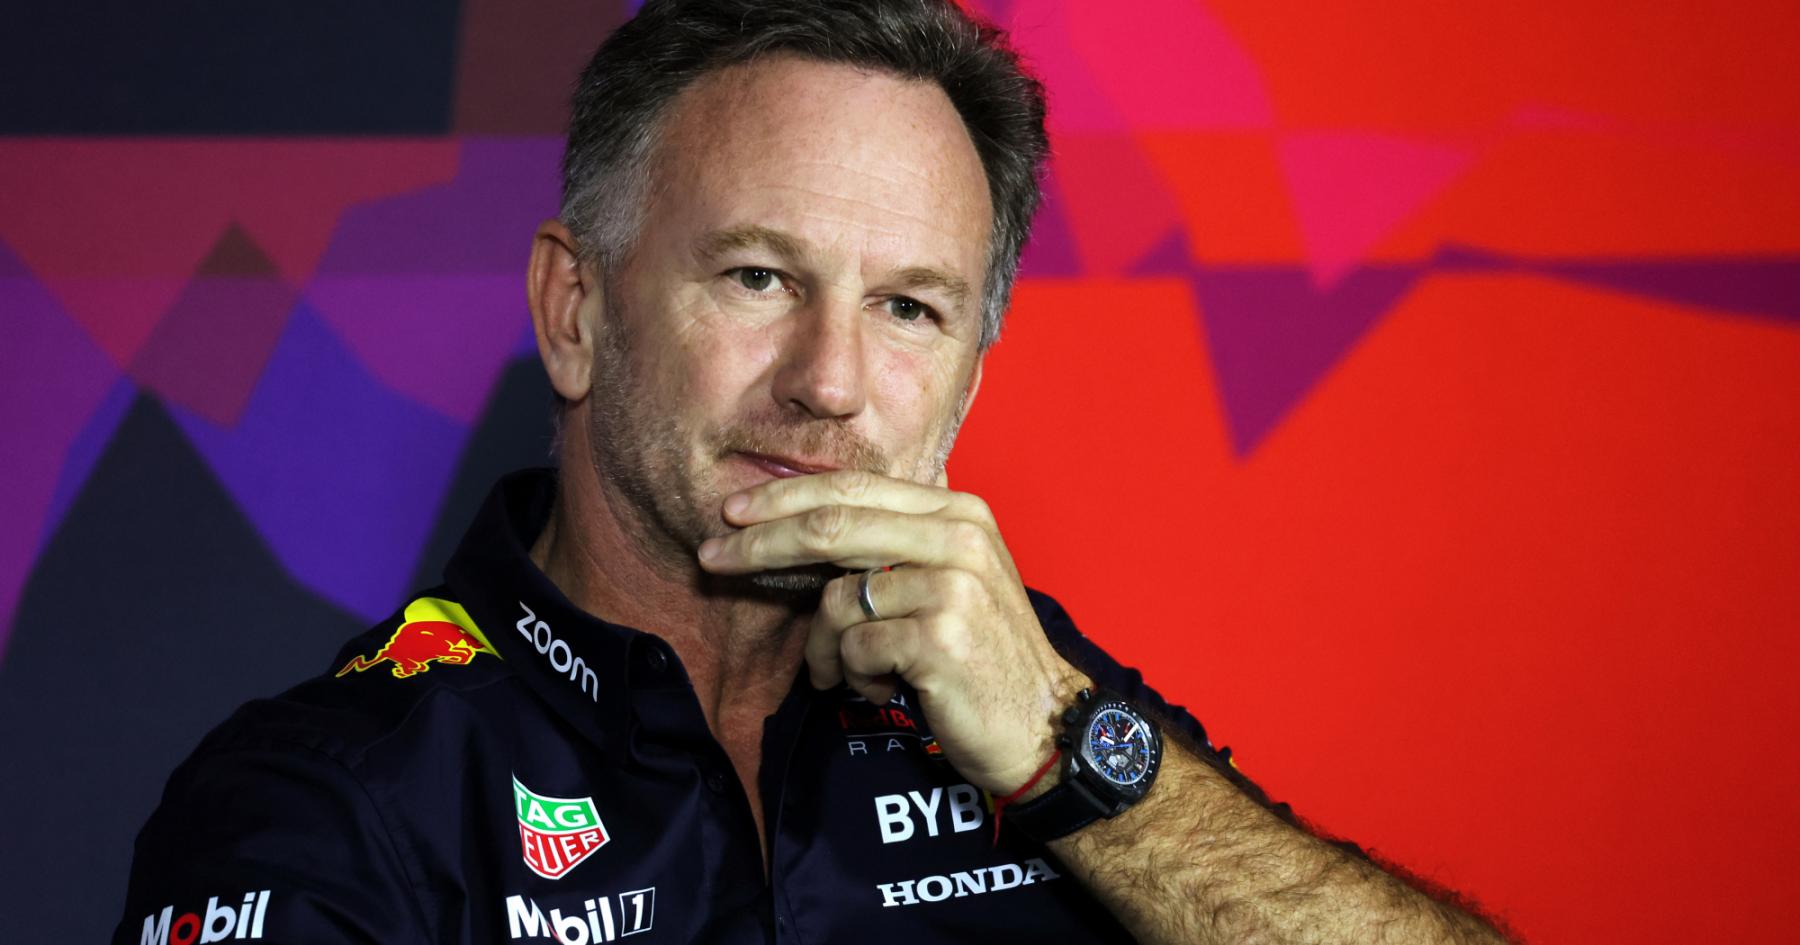 Red Bull's Verdict: Horner Cleared of Wrongdoing in Internal Probe